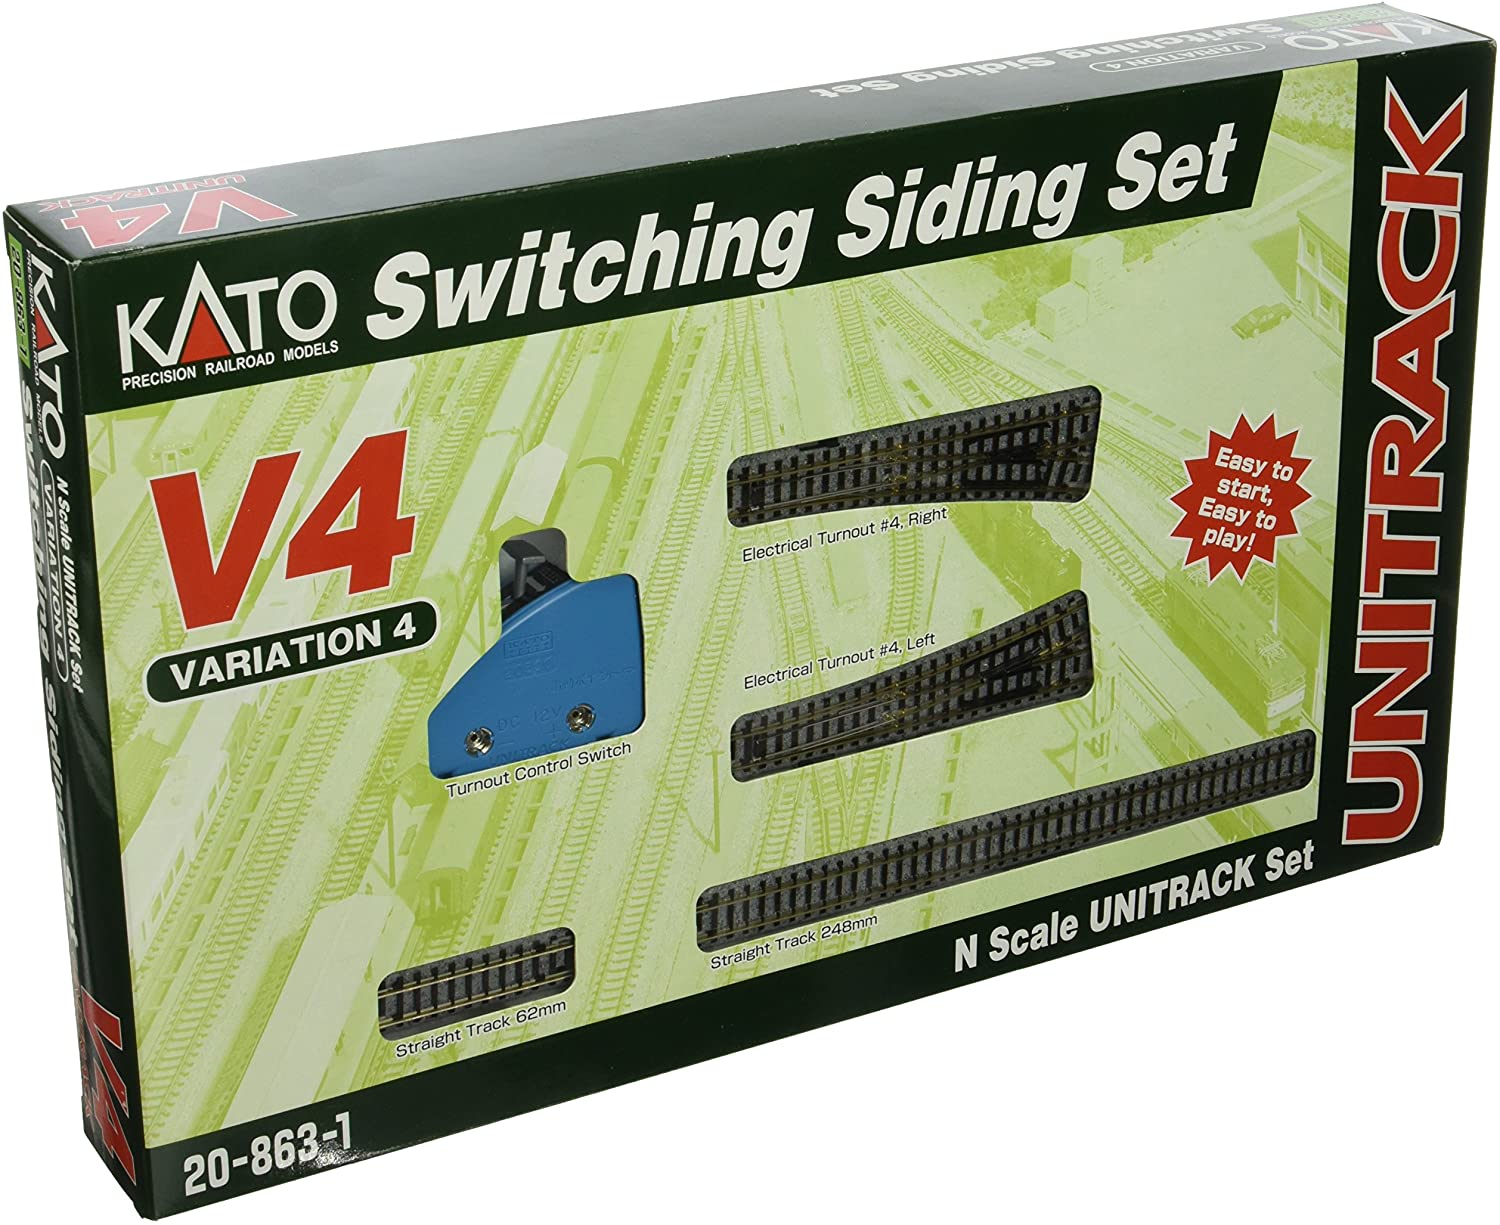 Kato Unitrack 20863 - N Scale Switching Siding Set - V4